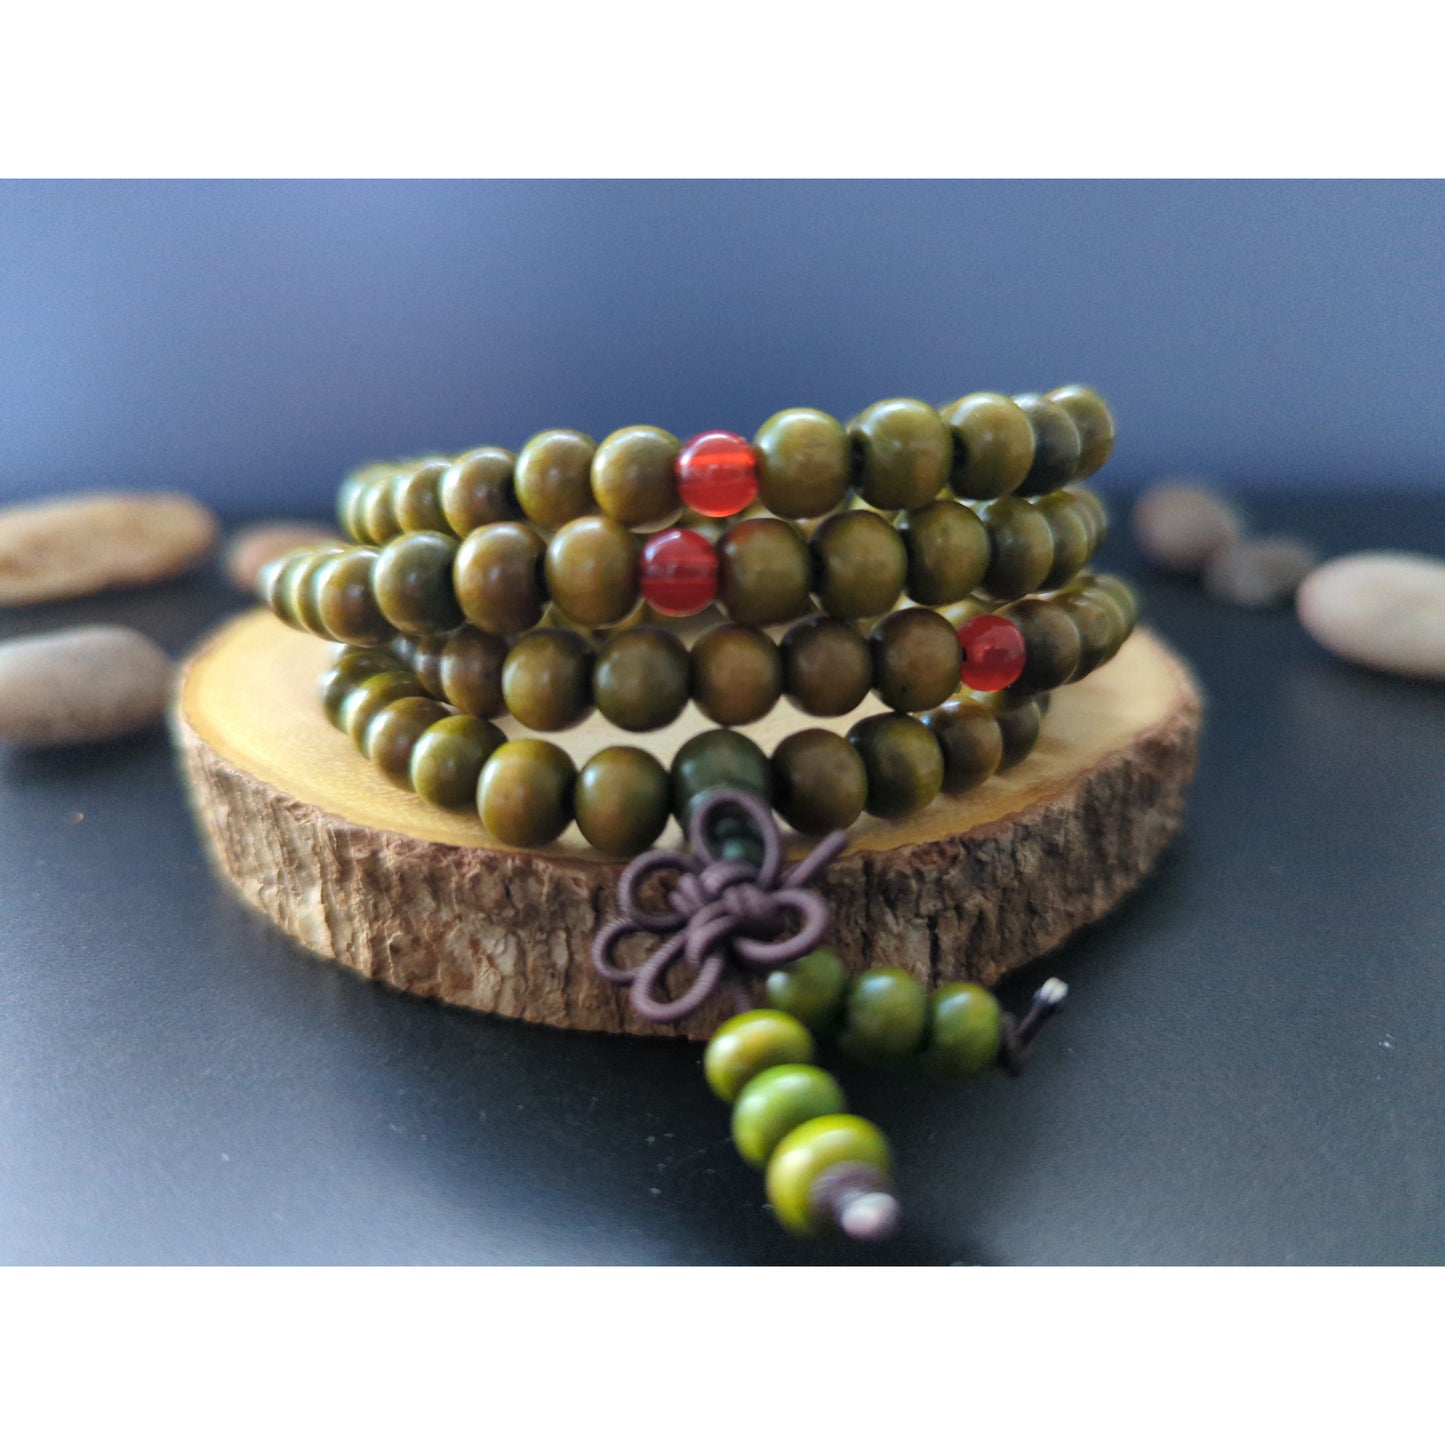 108 Mala Beads, Olive Wood Prayer Beads 23 inches Yoga Necklace Meditation  908